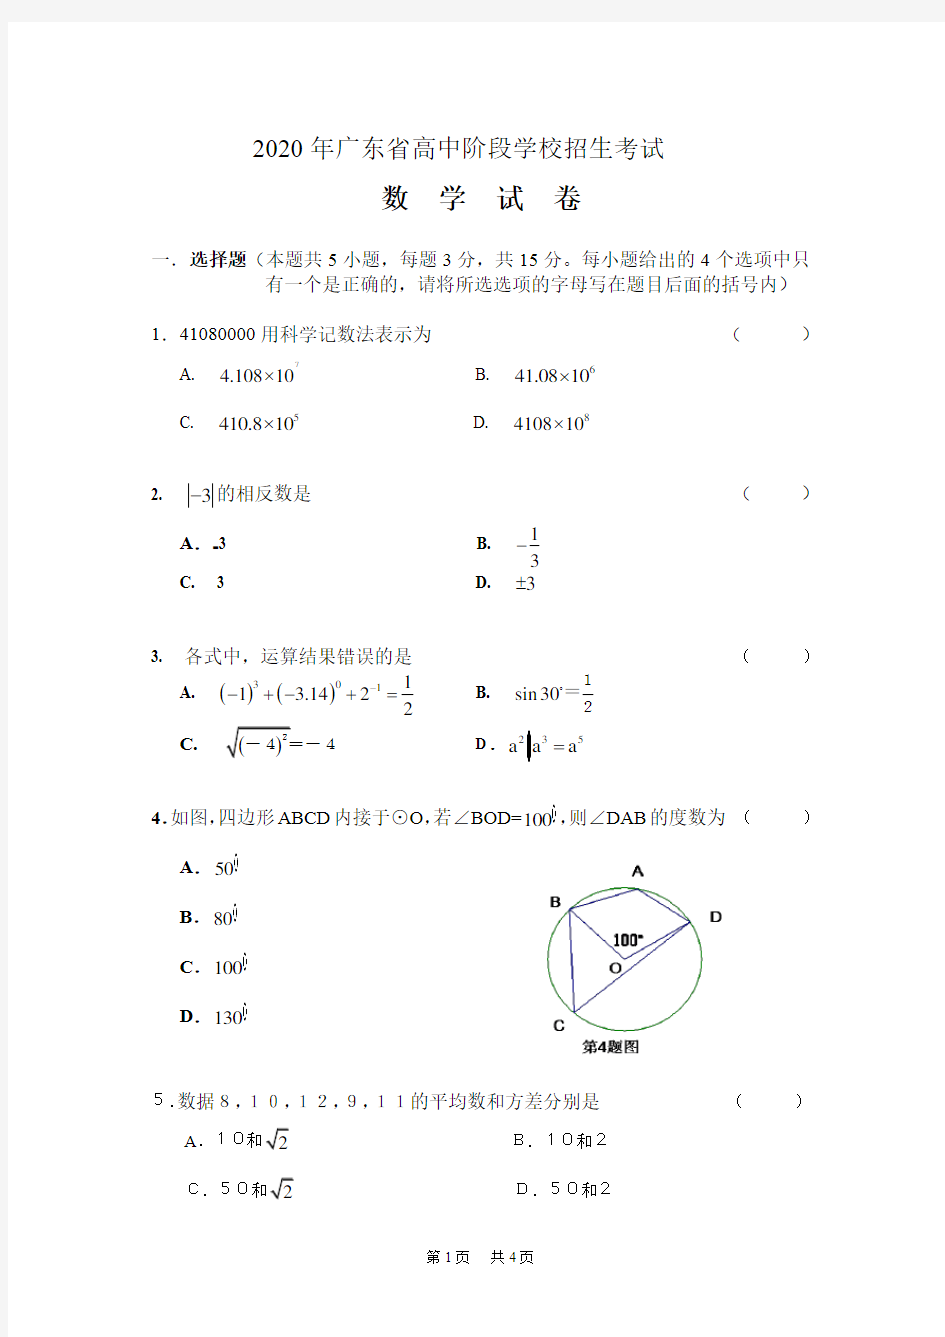 2020年广东省高中阶段学校招生考试数学试卷